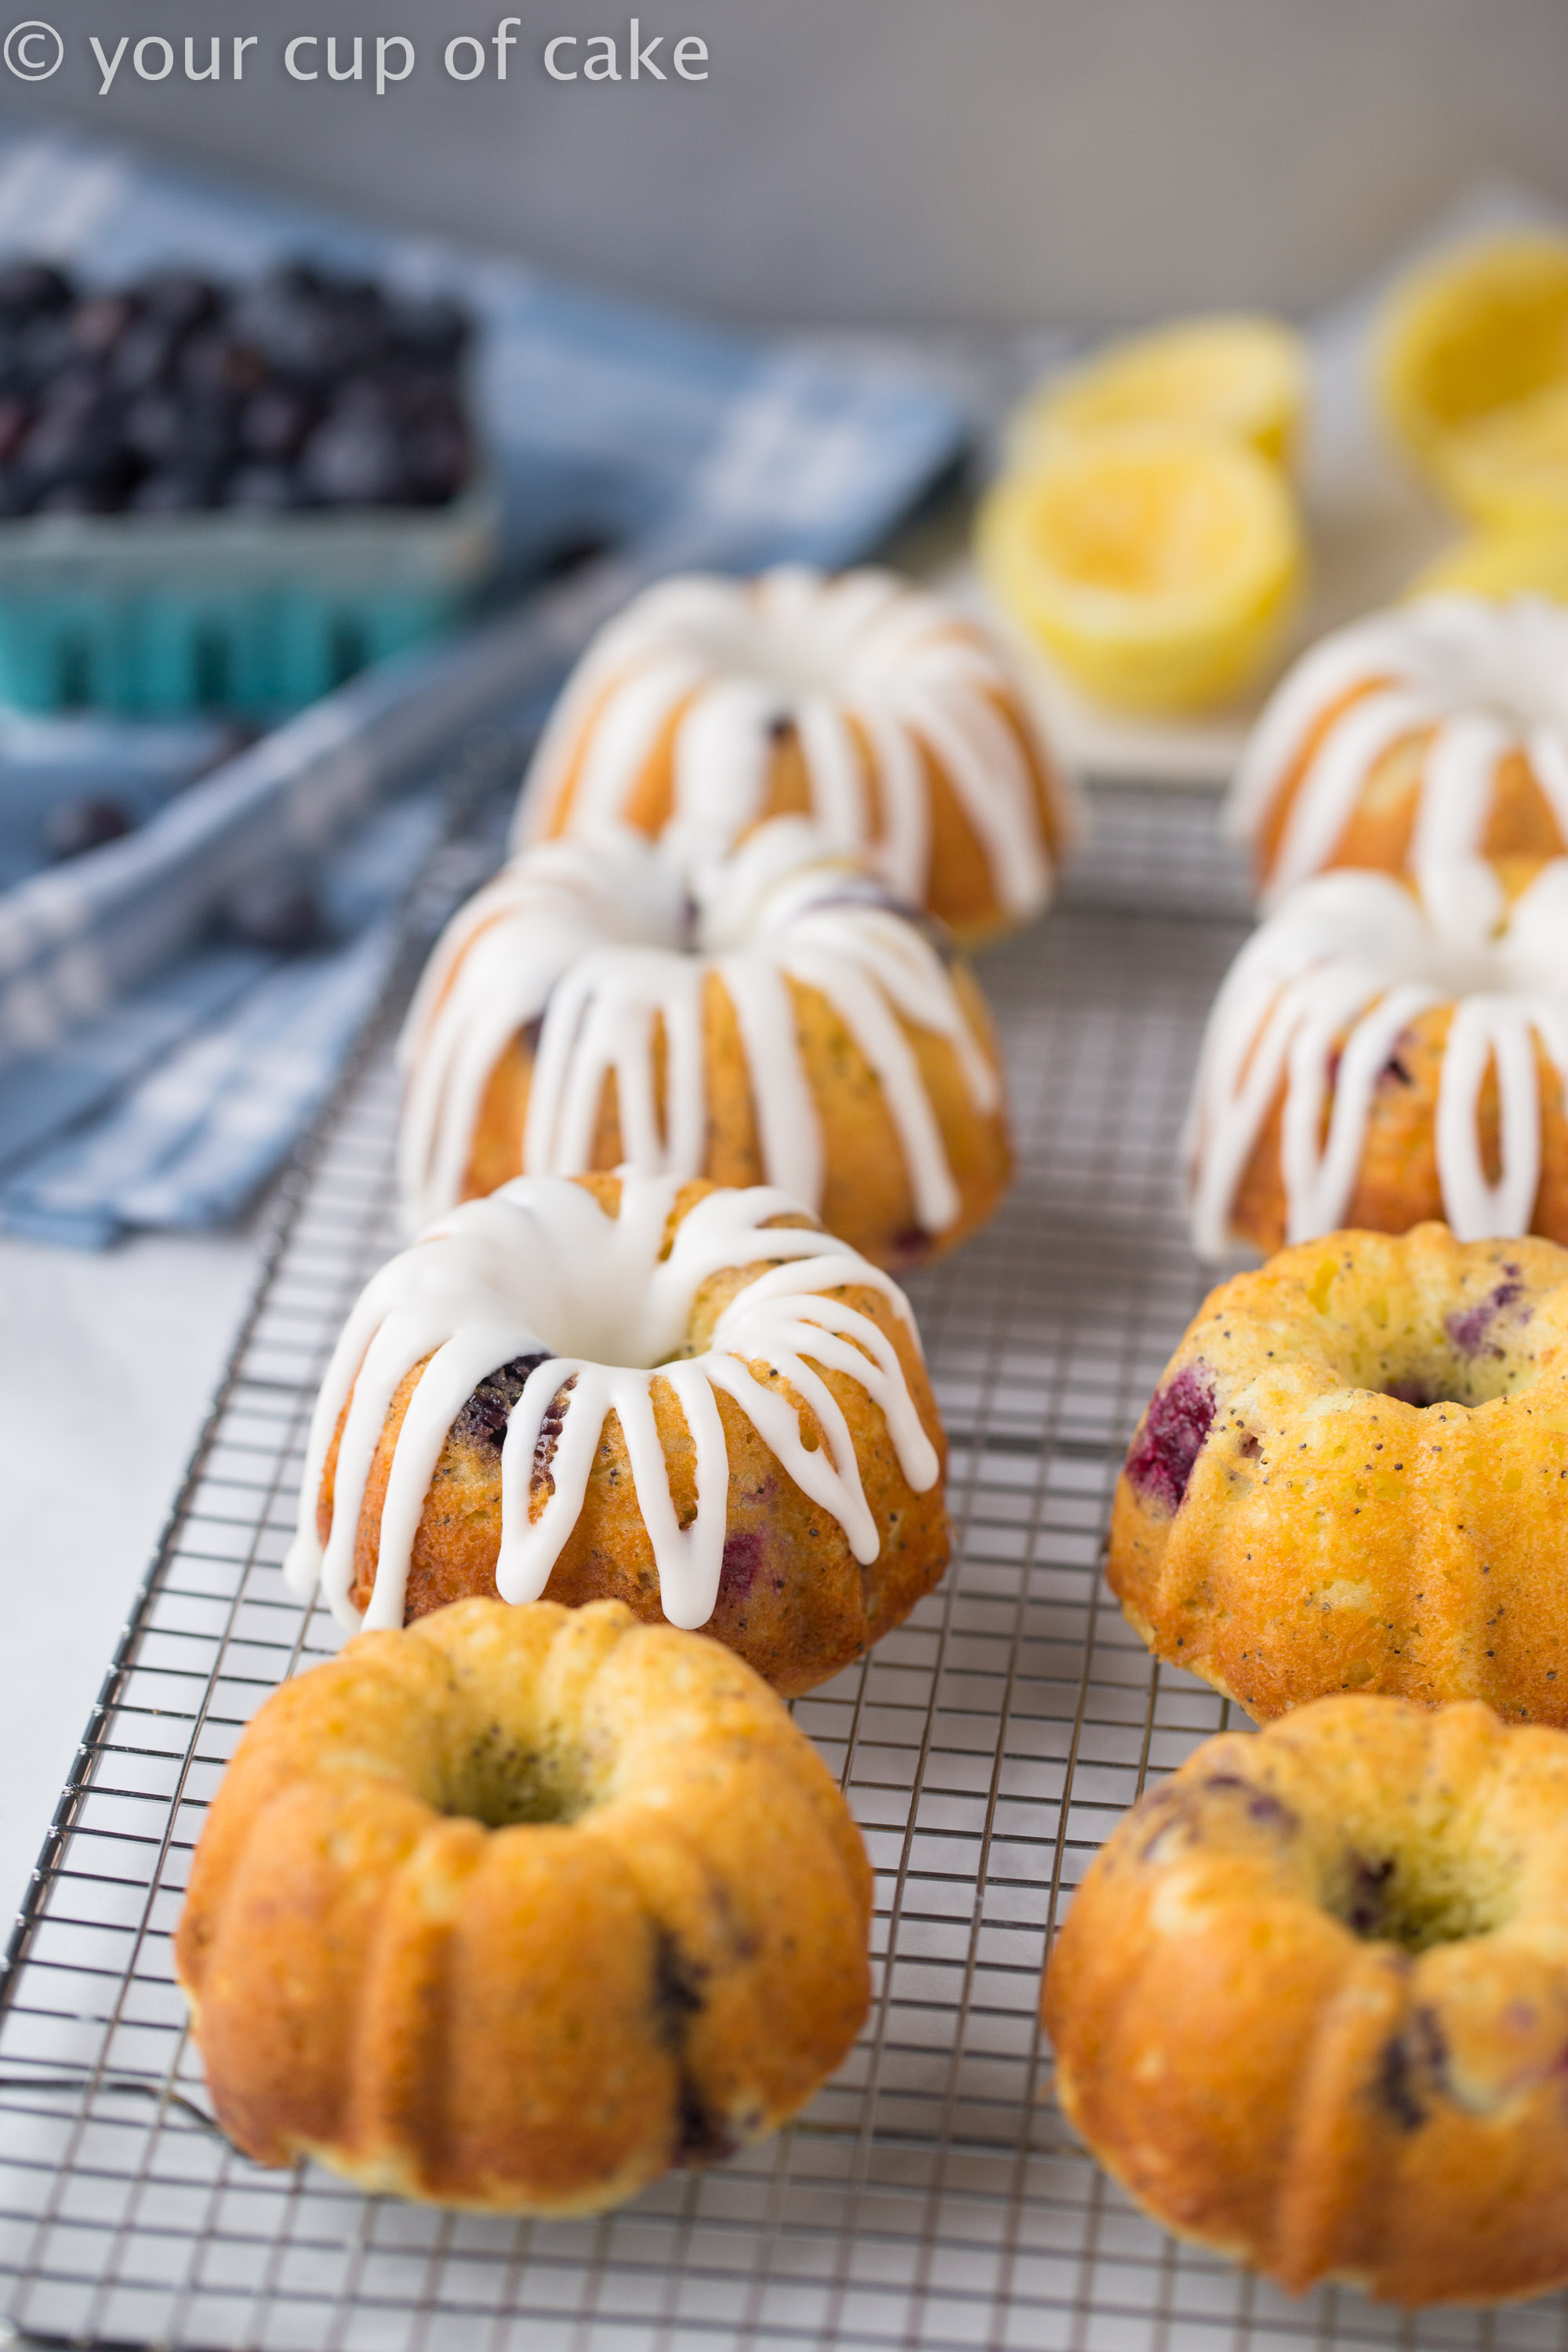 Easy to Make Lemon Blueberry Bundt Cakes